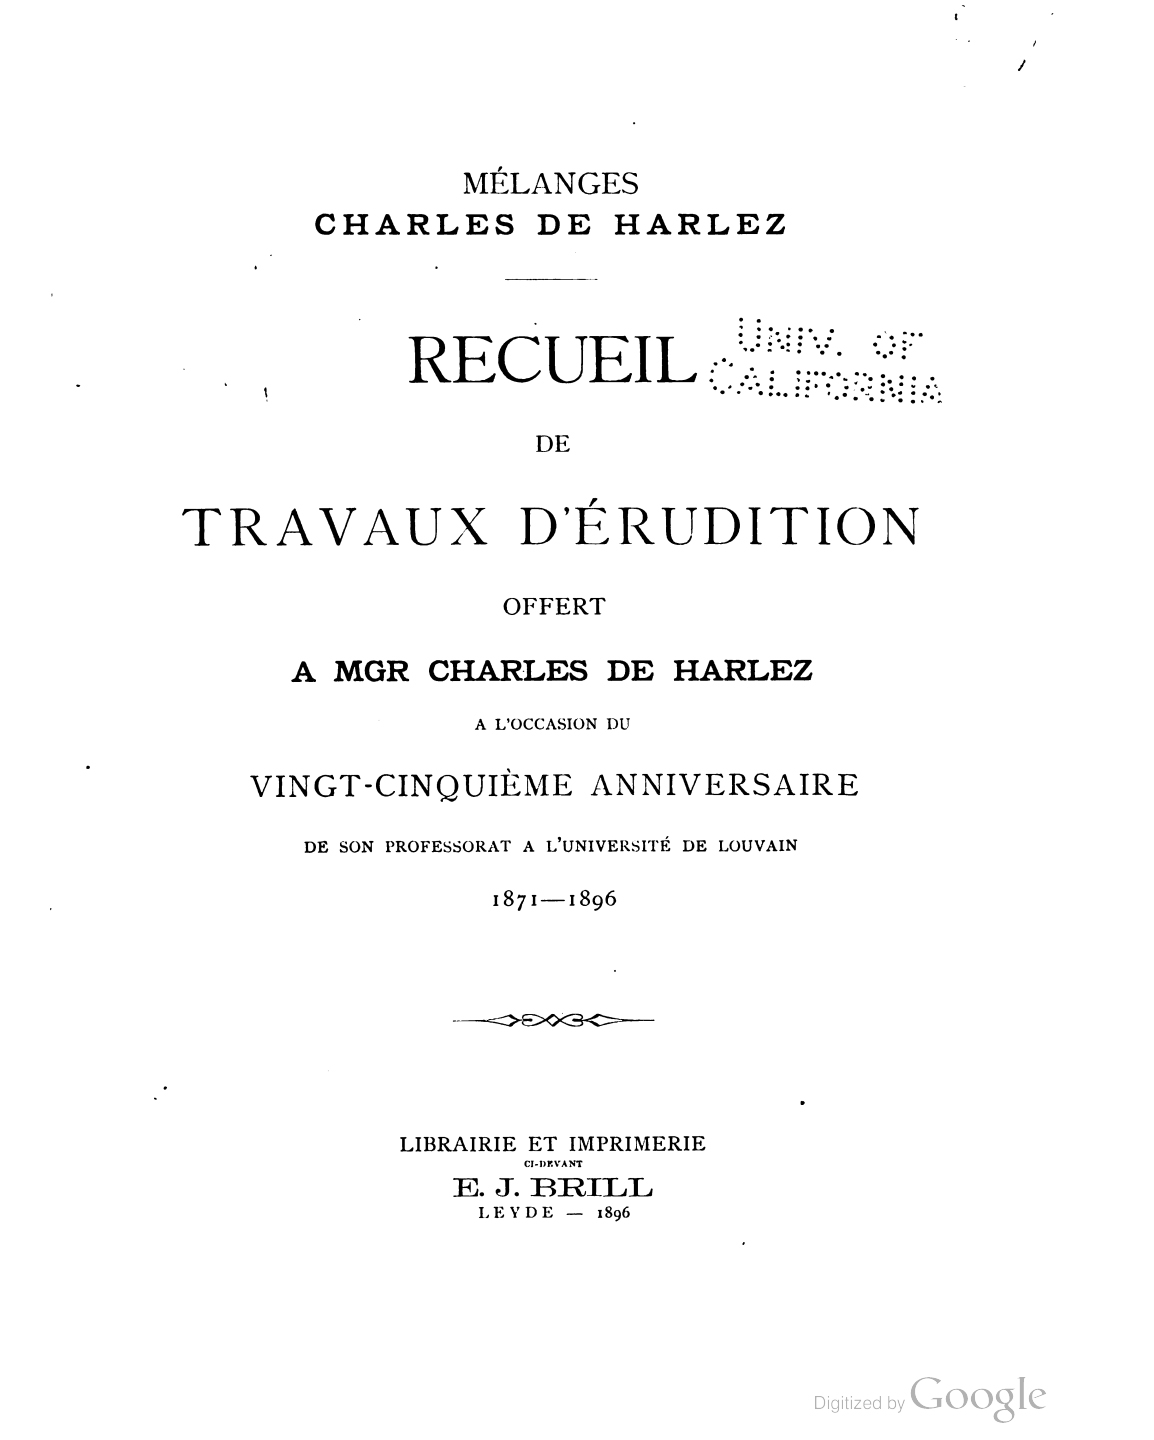 Melanges Charles de Harlez-front.jpg